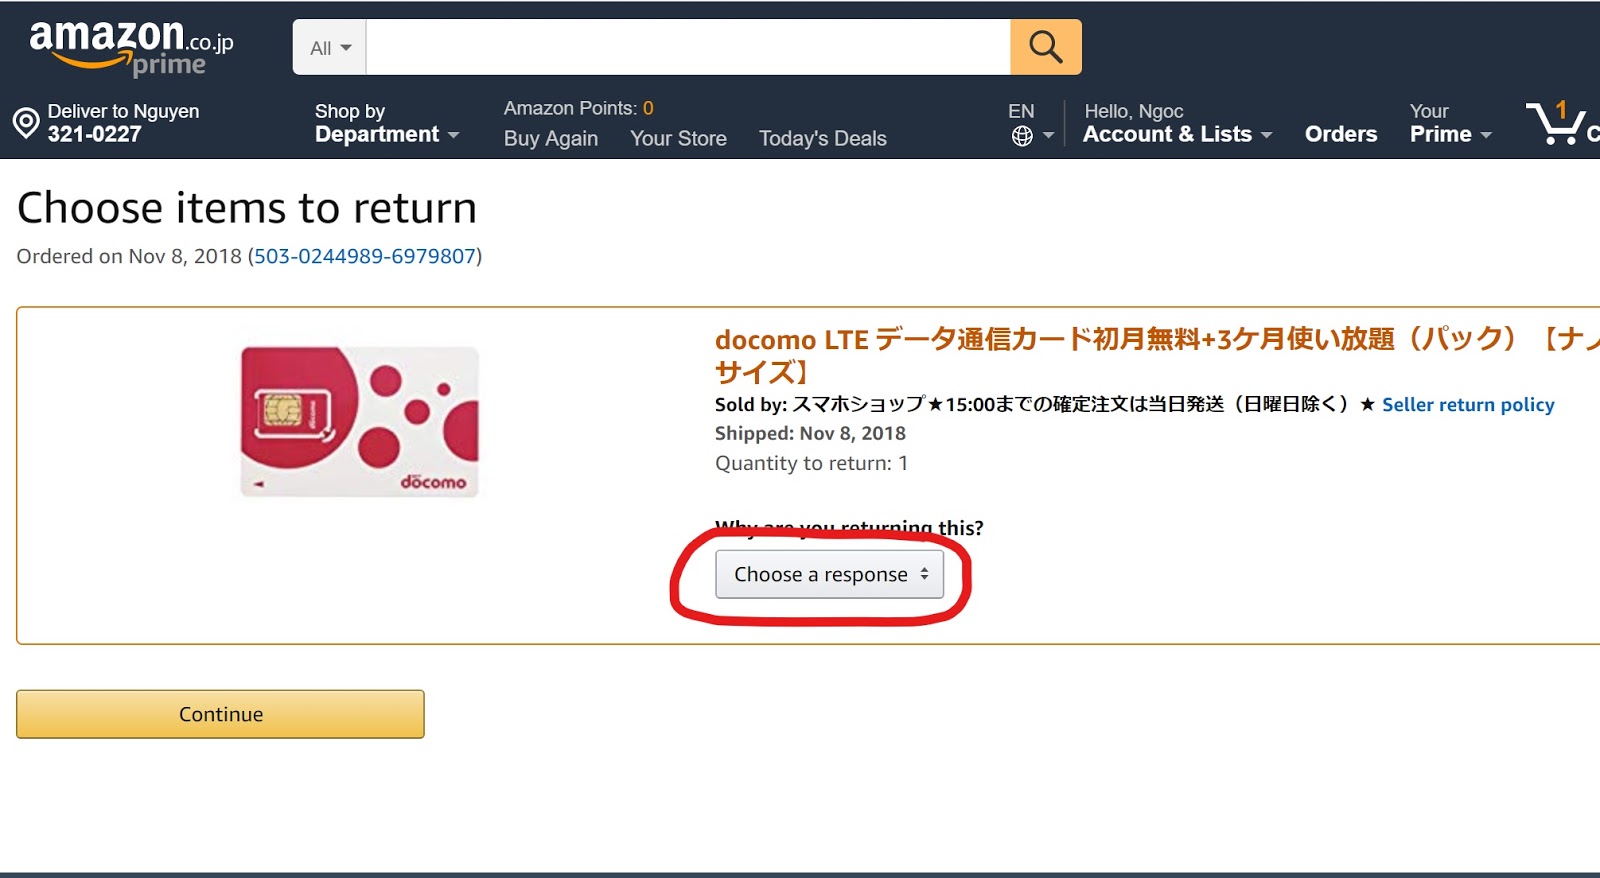 Cách trả lại hàng cho Amazon Nhật Bản từ diiho.com